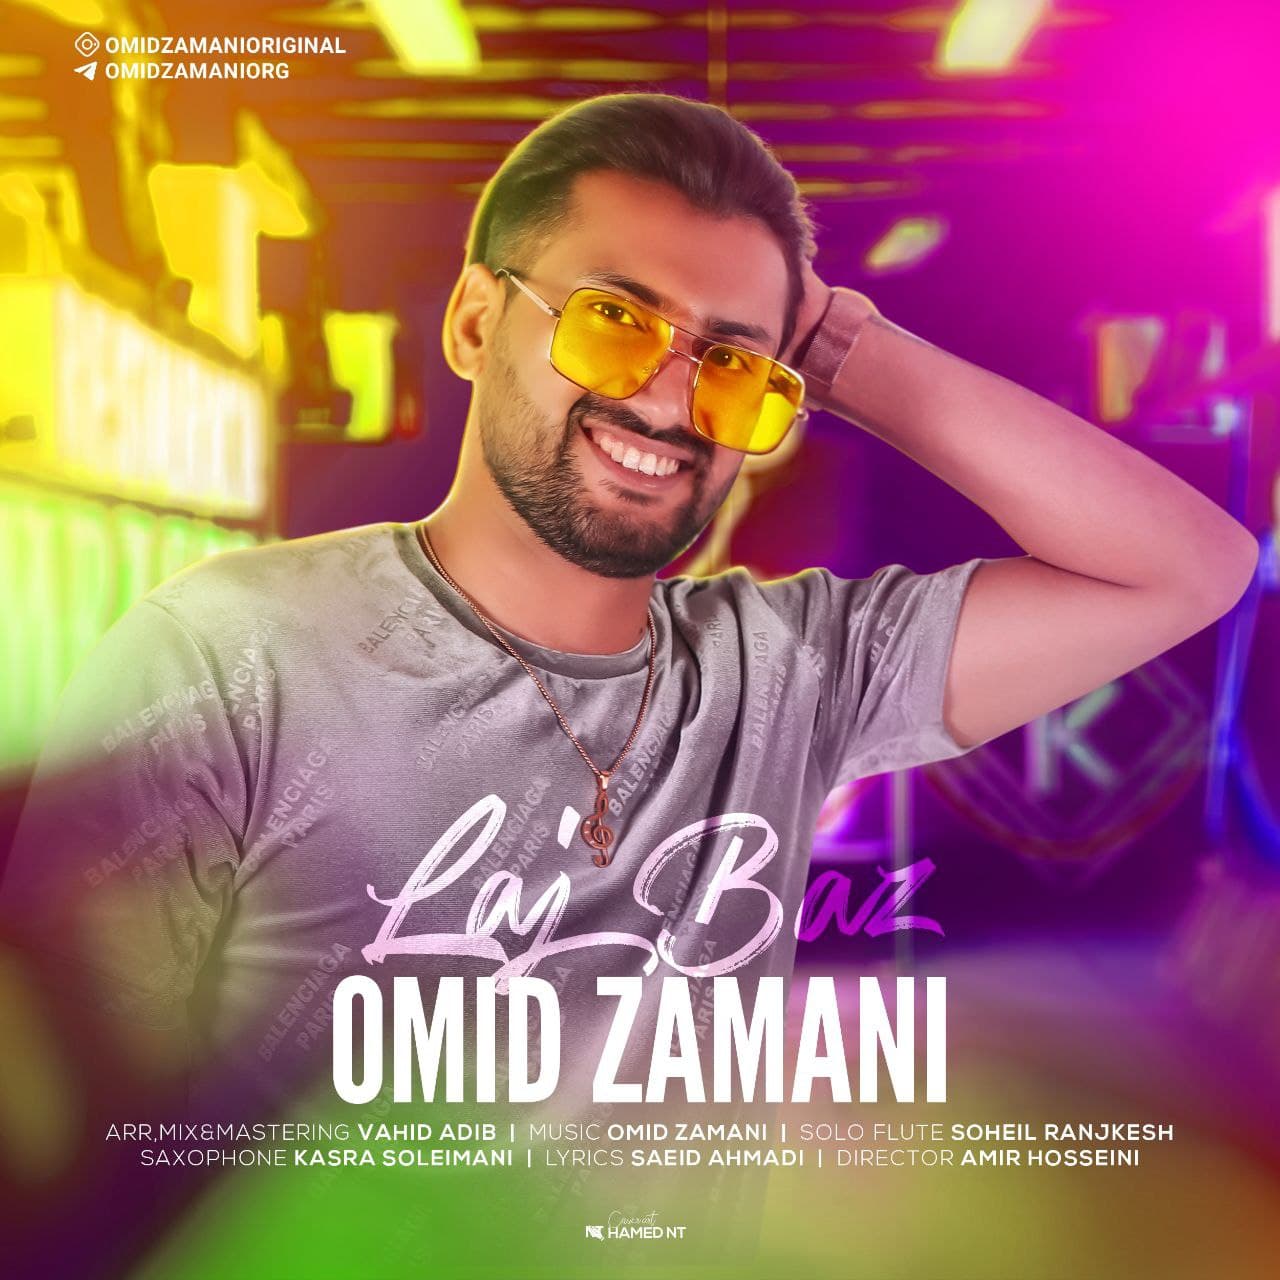 Omid Zamani – Lajbaz